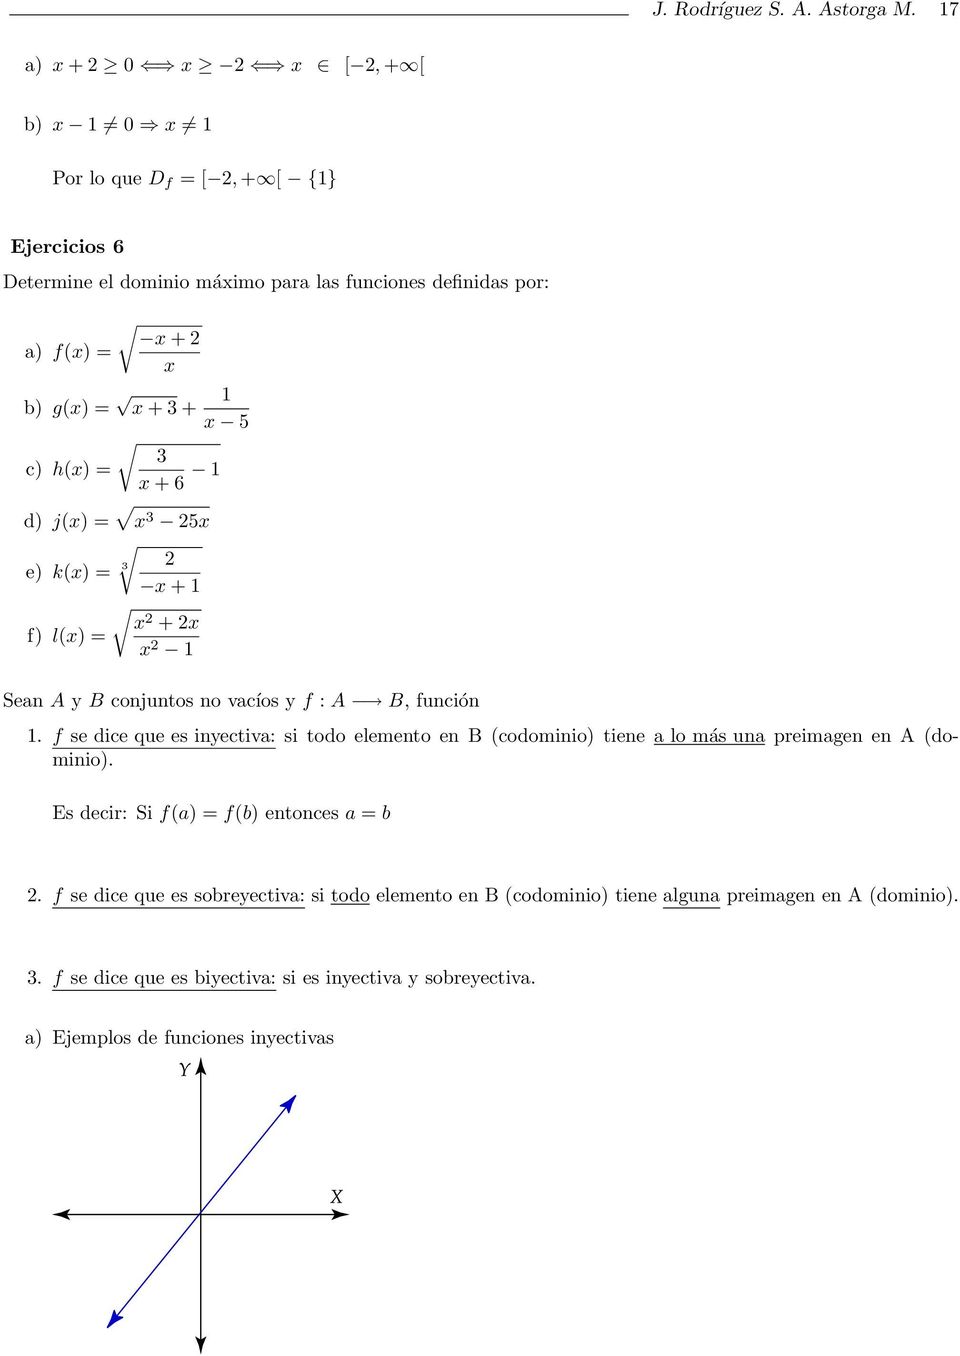 1 x 5 3 c) h(x) = x + 6 1 x d) j(x) = x 3 5x e) k(x) = 3 x + 1 x + x f) l(x) = x 1 Sean A y B conjuntos no vacíos y f : A B, función 1.